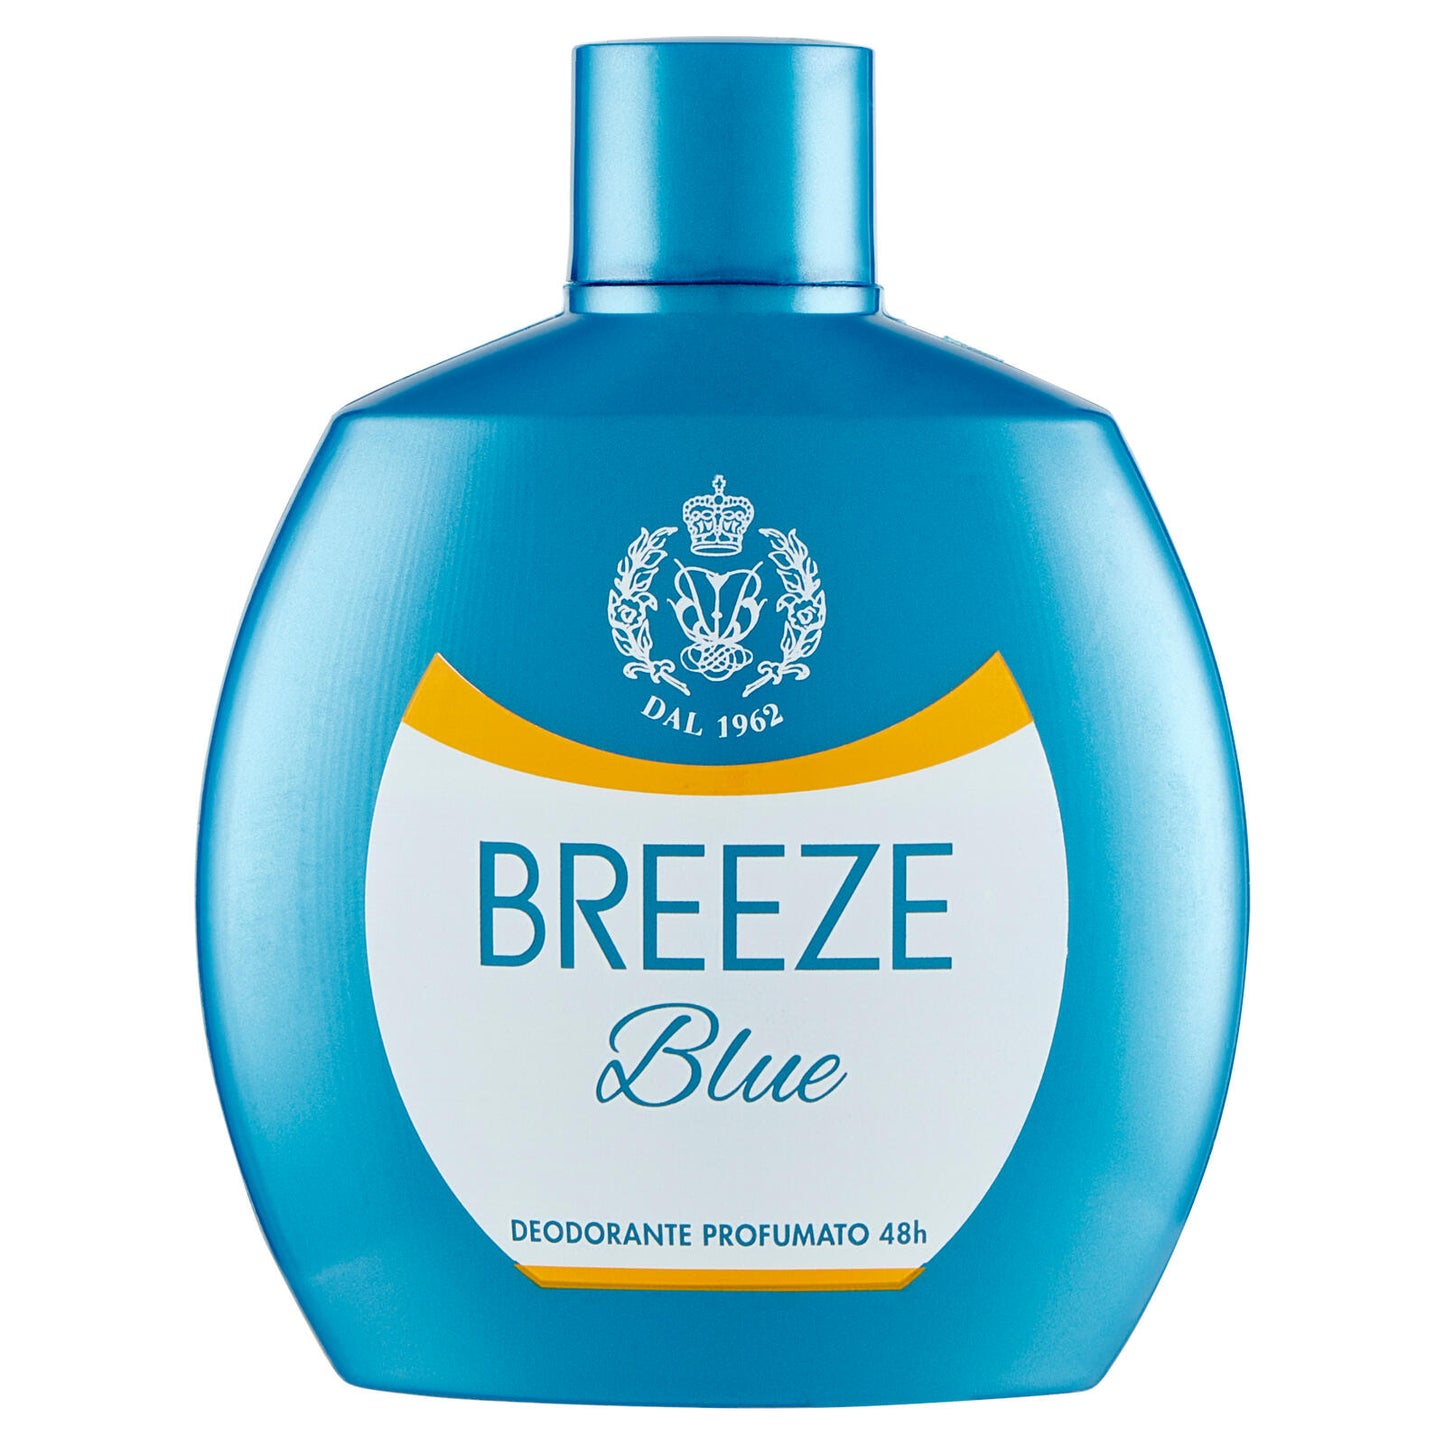 Breeze Blue Deodorante Profumato 48h 100 mL